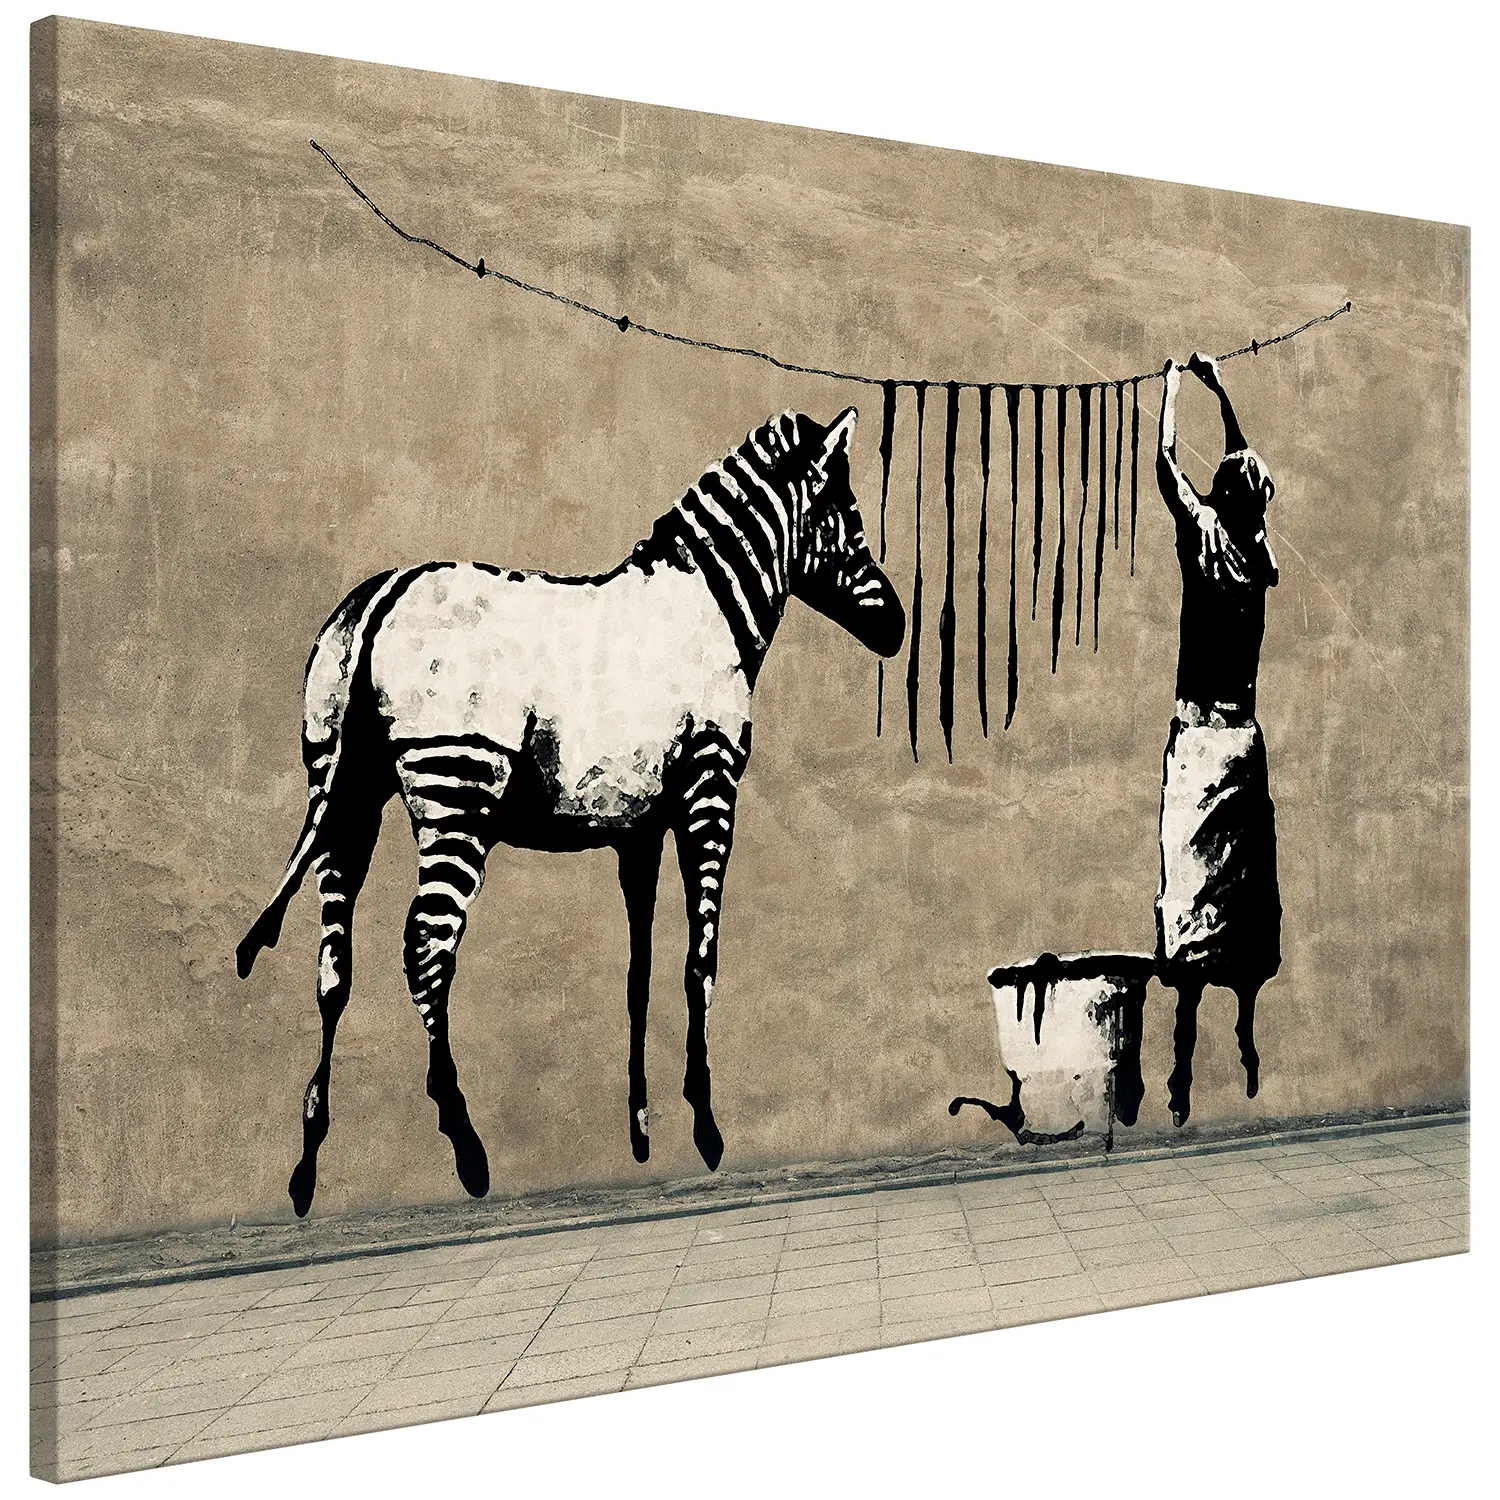 Concrete Bild on (Banksy) Zebra Washing